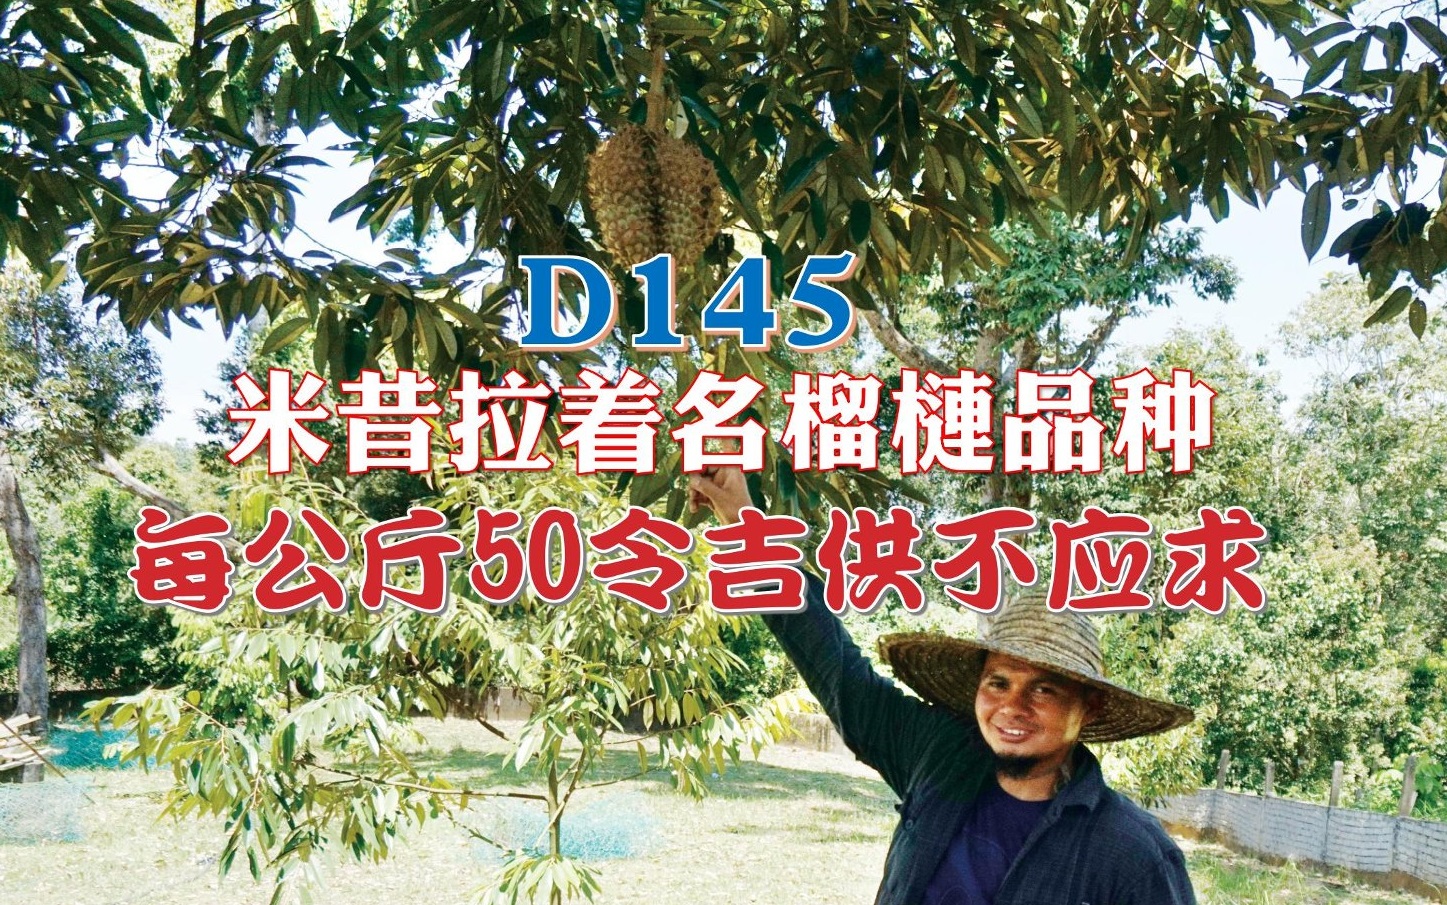 D145米昔拉著名榴槤品種 每公斤50令吉供不應求 - 农牧世界